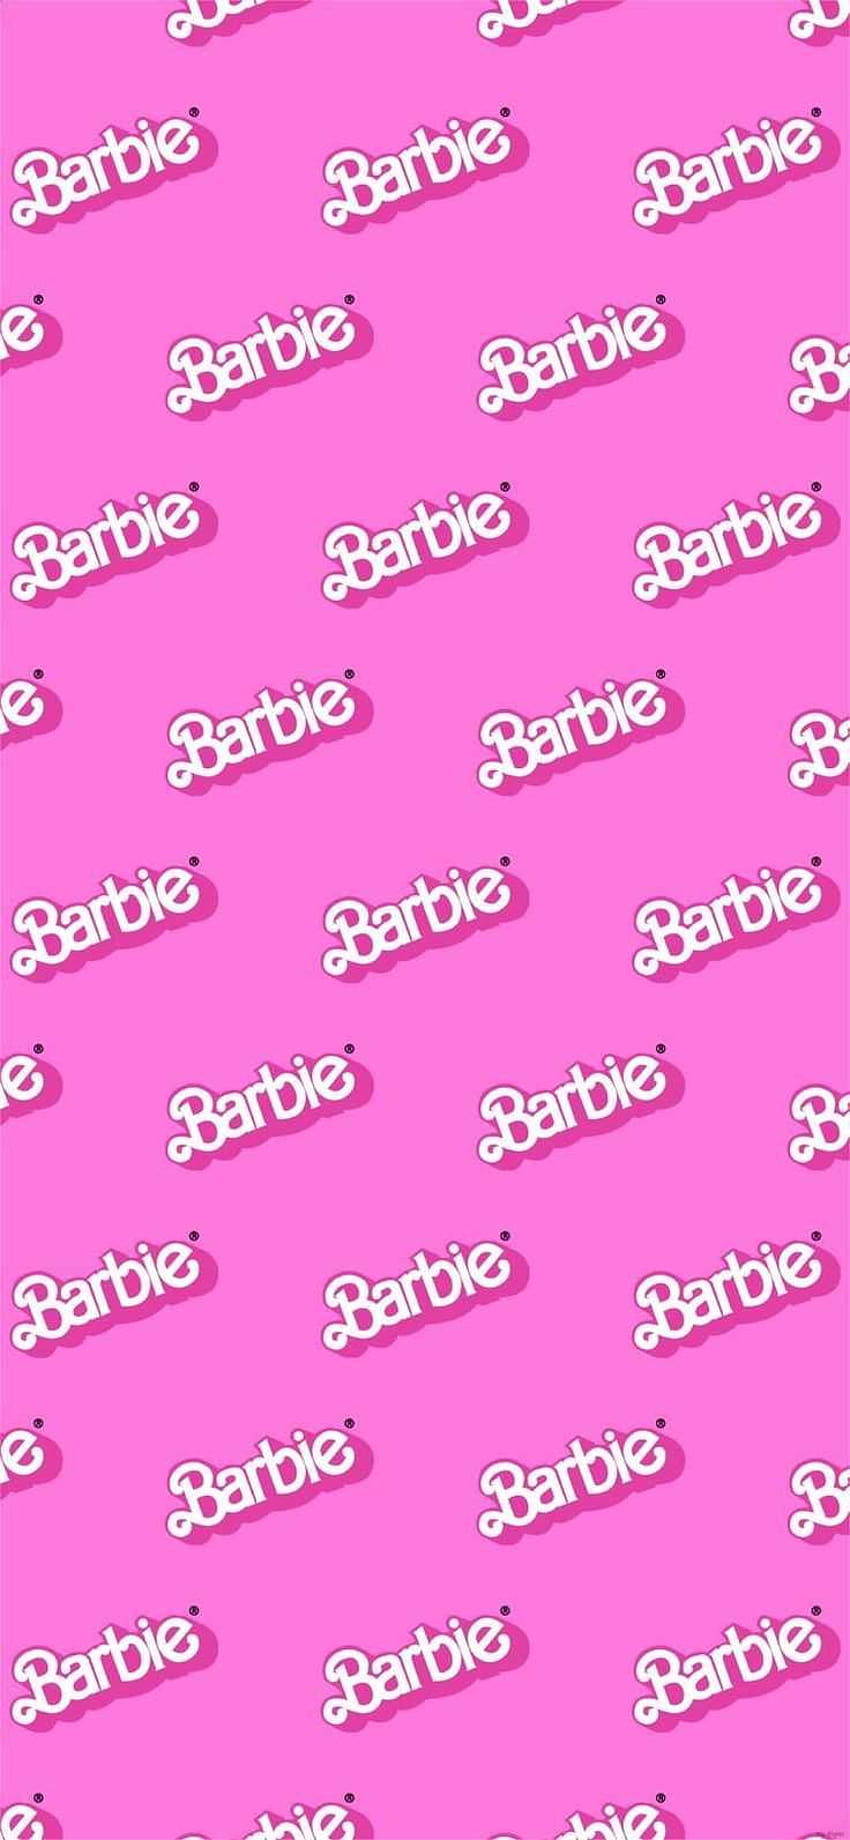 Barbie, baddie logo HD phone wallpaper